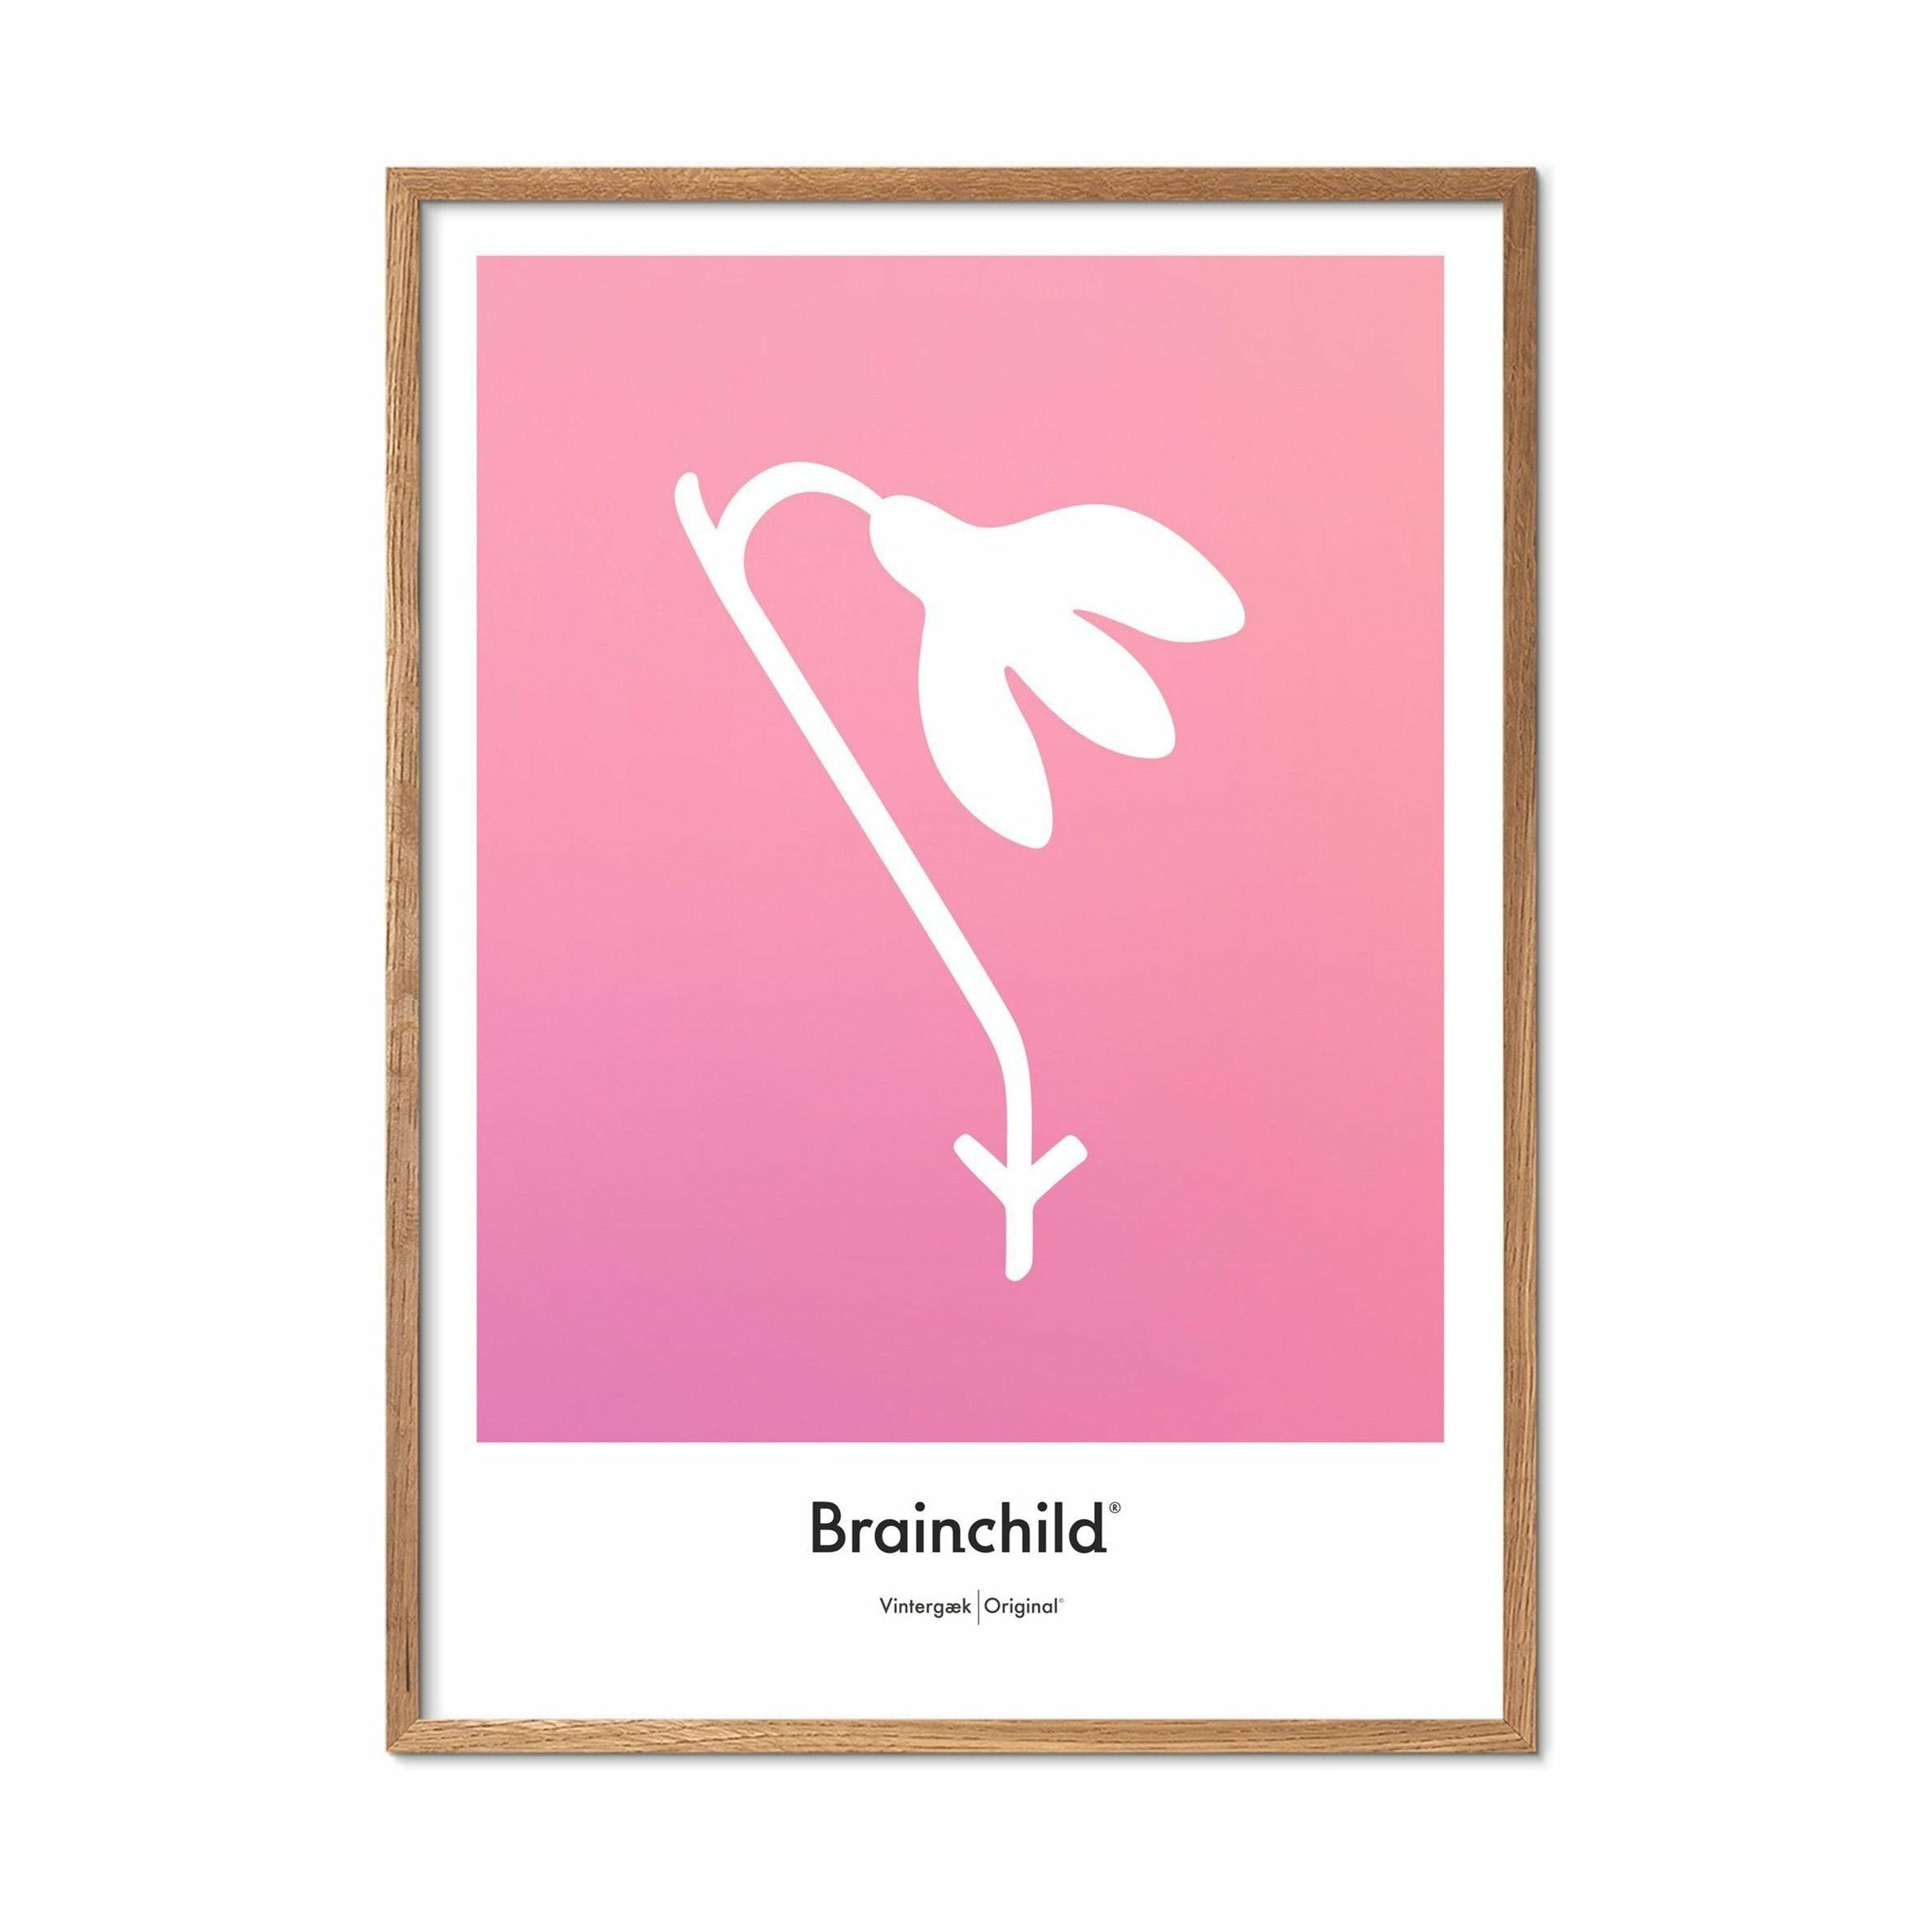 Brainchild Affiche de l'icône de conception de neige, cadre en bois clair A5, rose